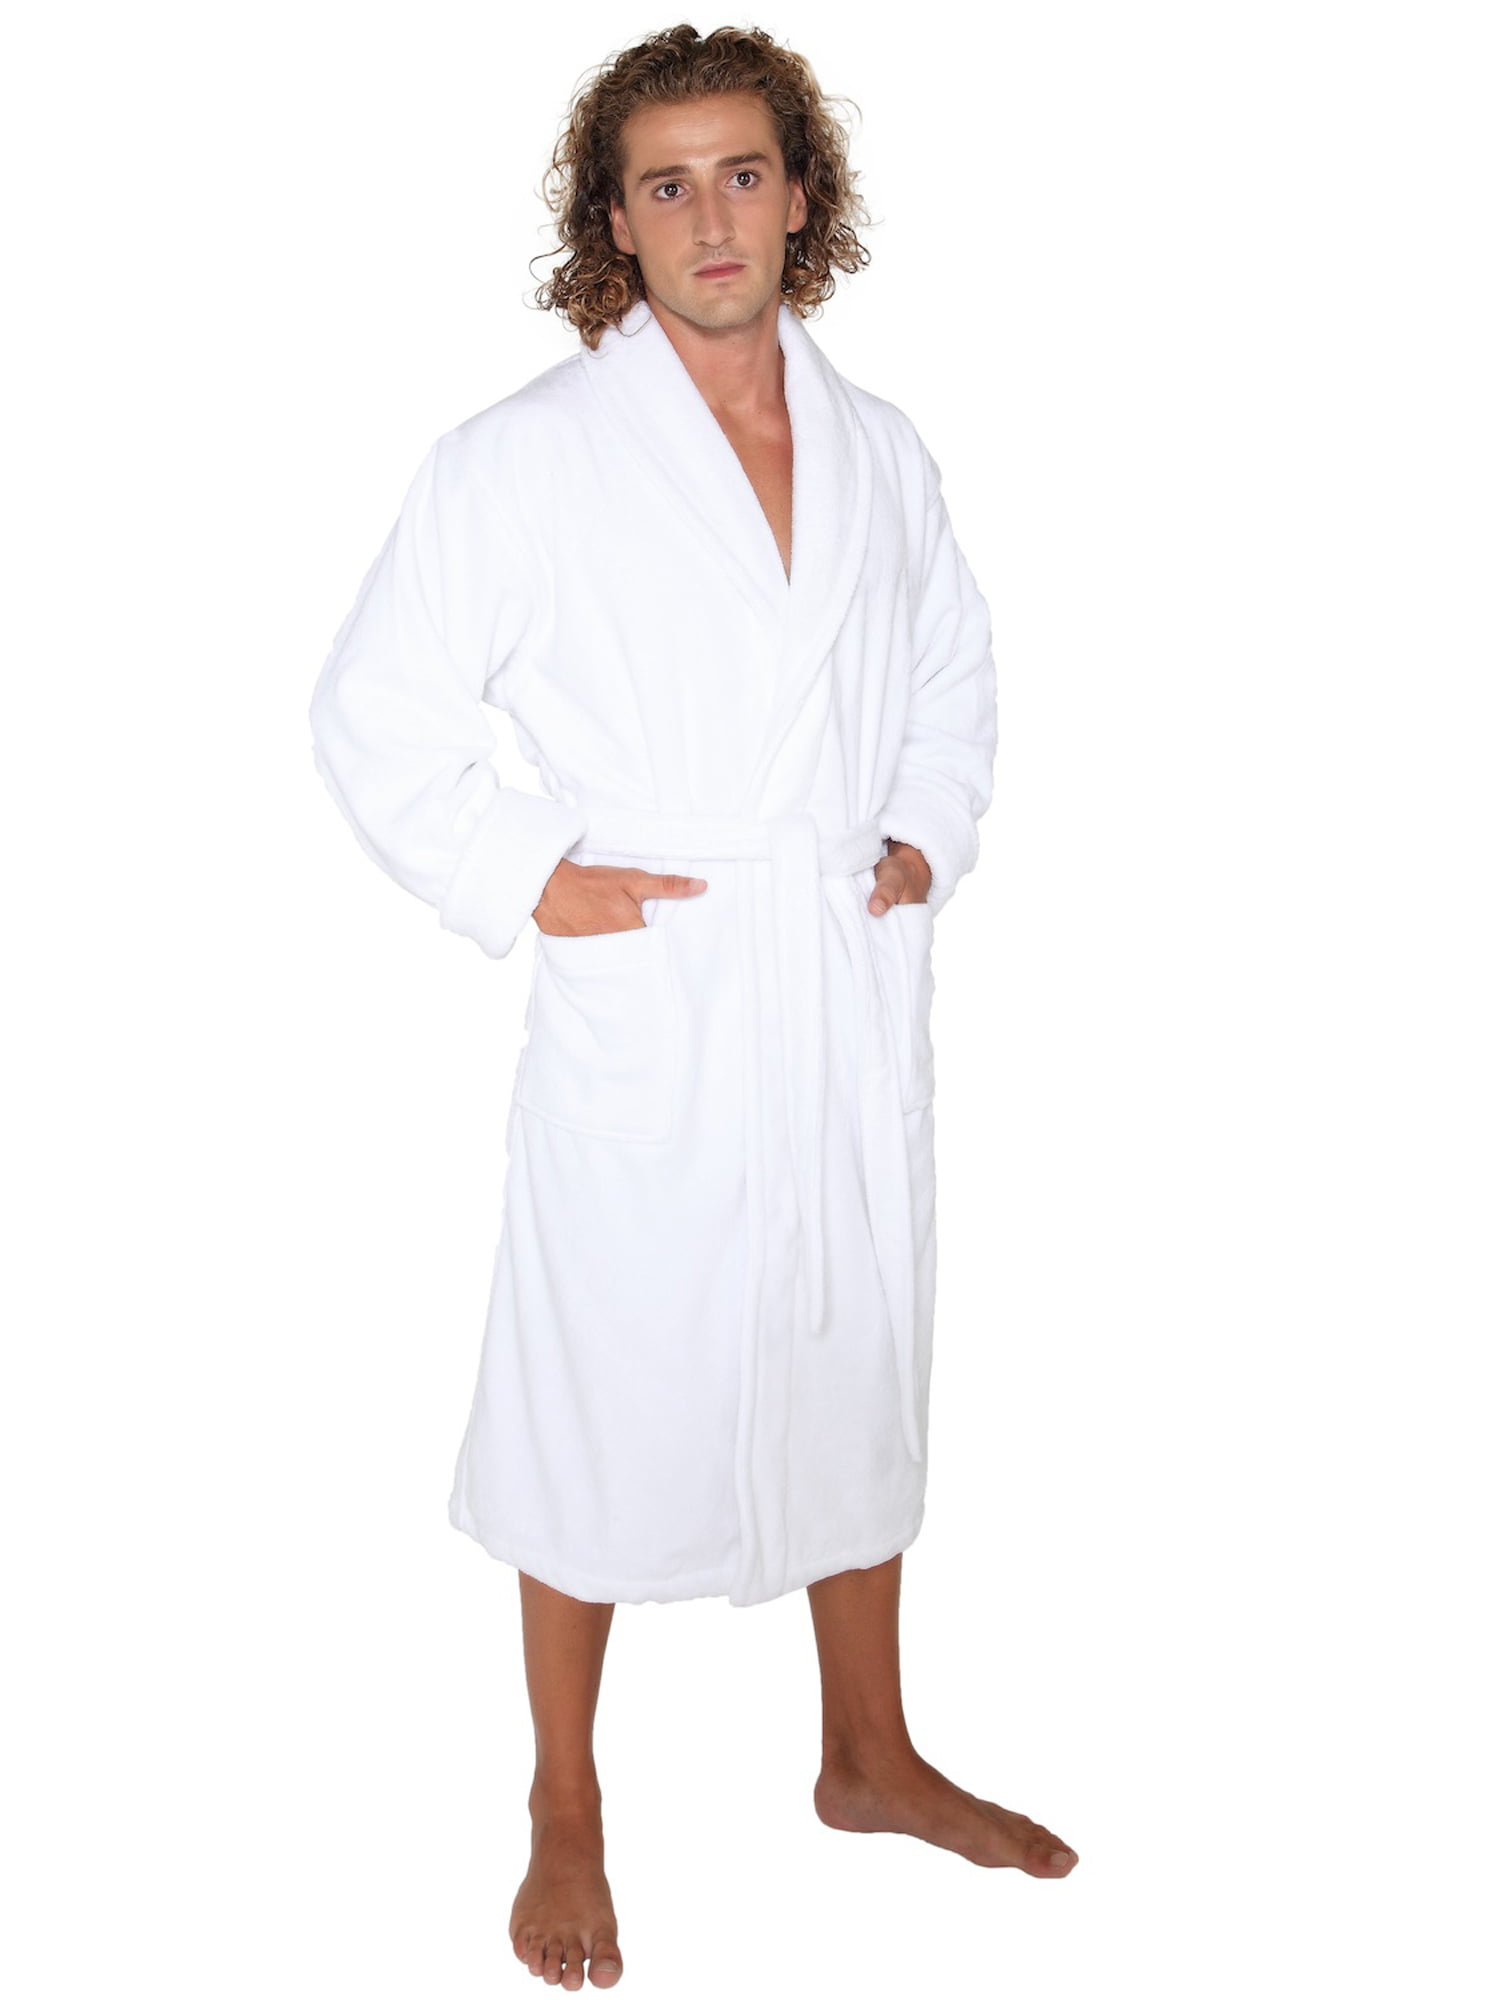 TowelSelections Men’s Robe Turkish Cotton Terry Kimono Spa Bathrobe